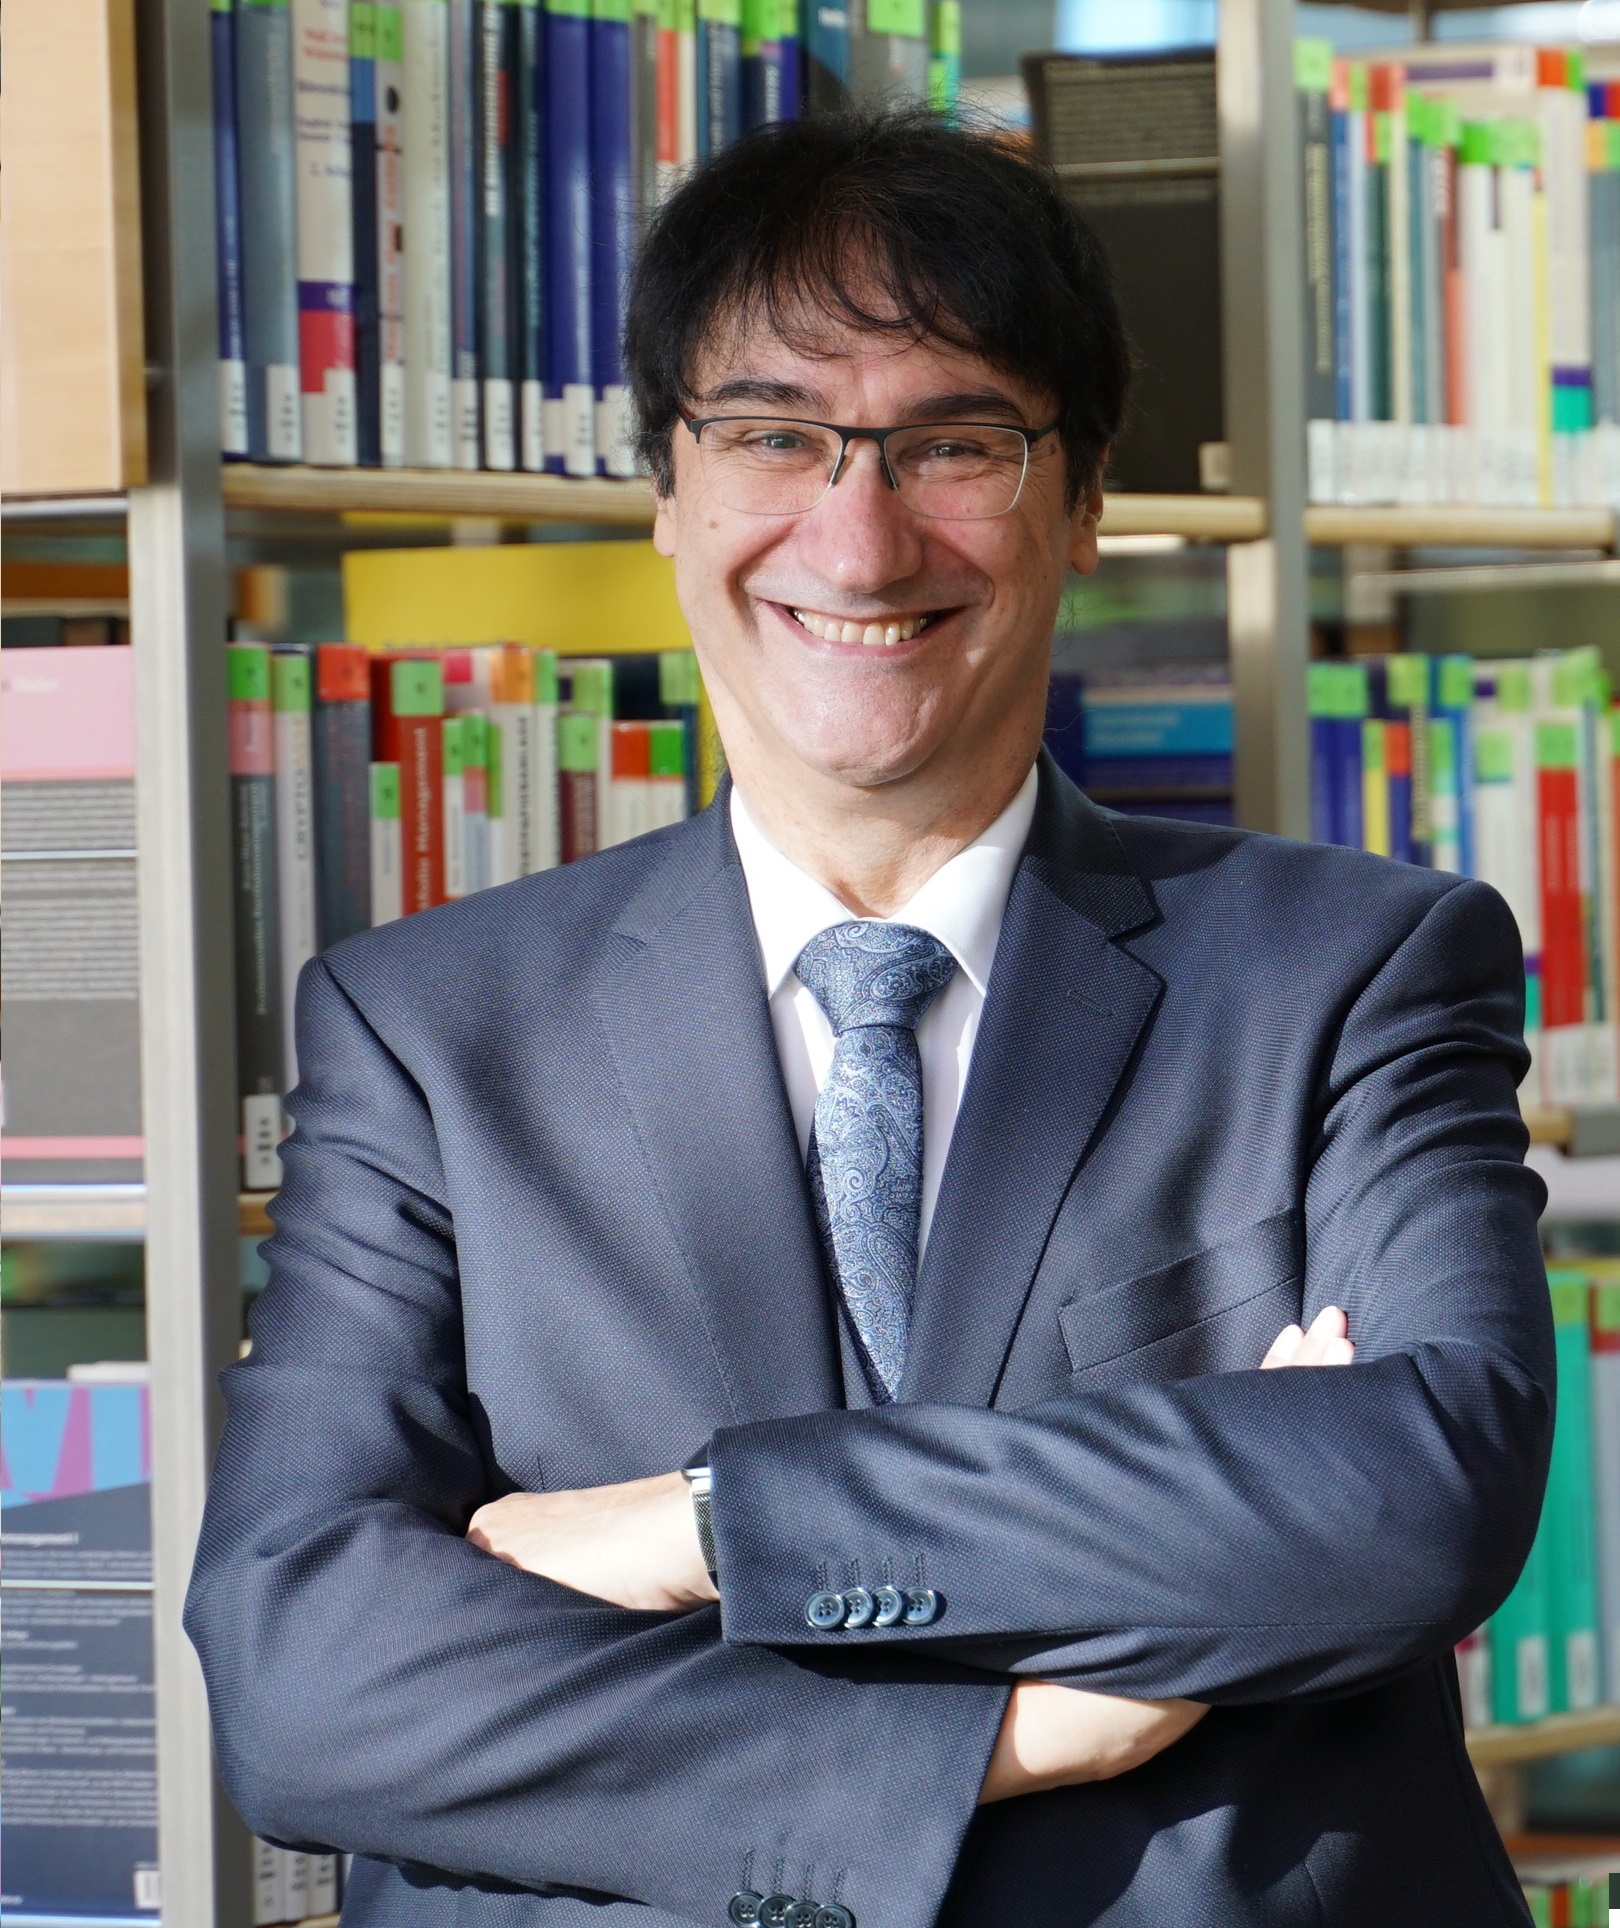 Portraitbild Prof. Stephan Kassel in Hochschulbibliothek, im Hintergrund Bücherregale